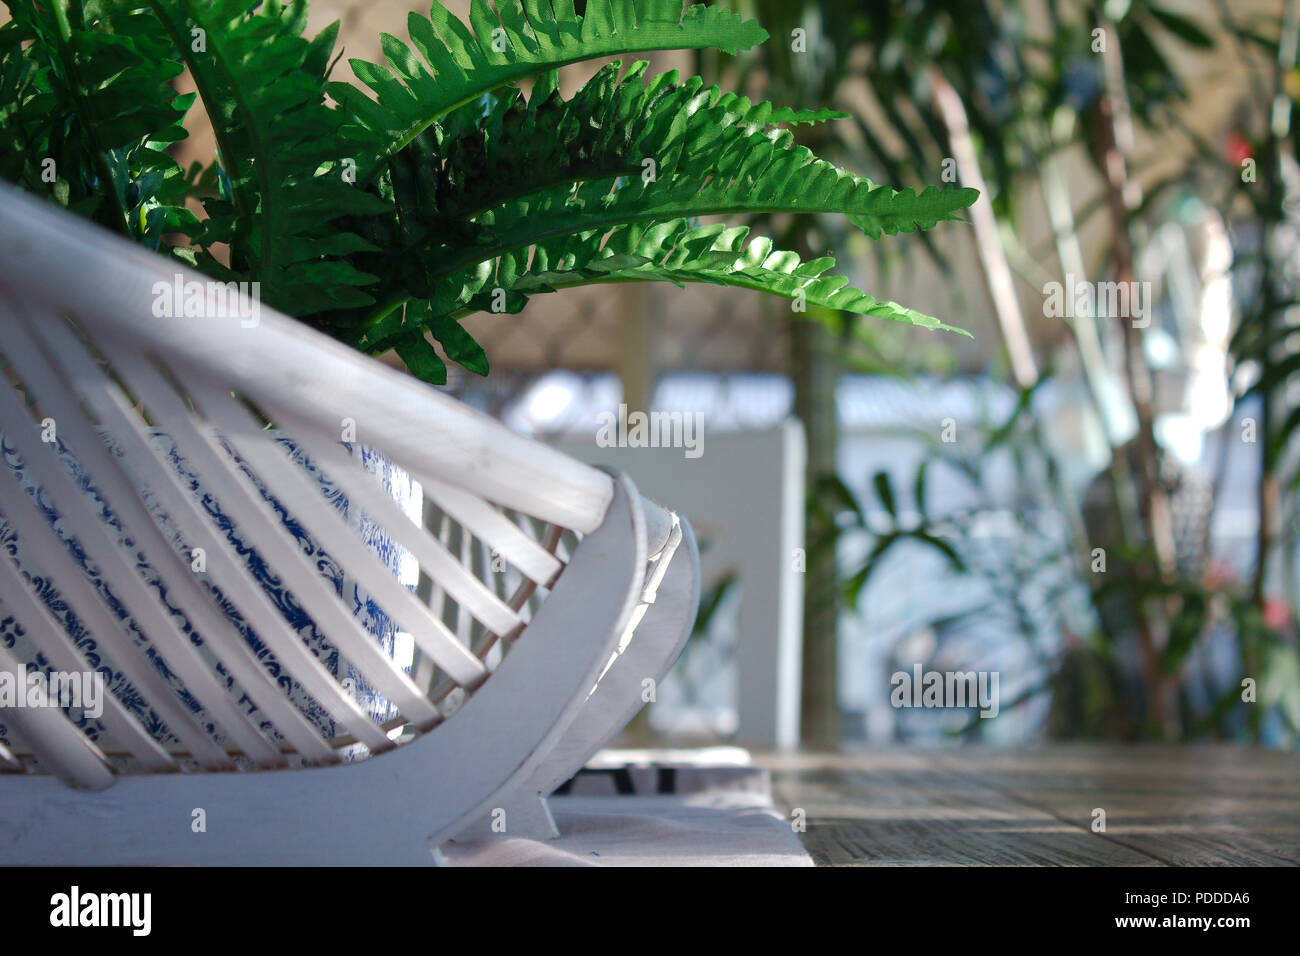 Eine gefälschte grünen Farn Pflanze in einem blau-weiße Übertopf sitzt in einem weißen Stock Ovaler Korb. Die Einrichtung befindet sich in der Mitte ein Esstisch aus Holz. Stockfoto